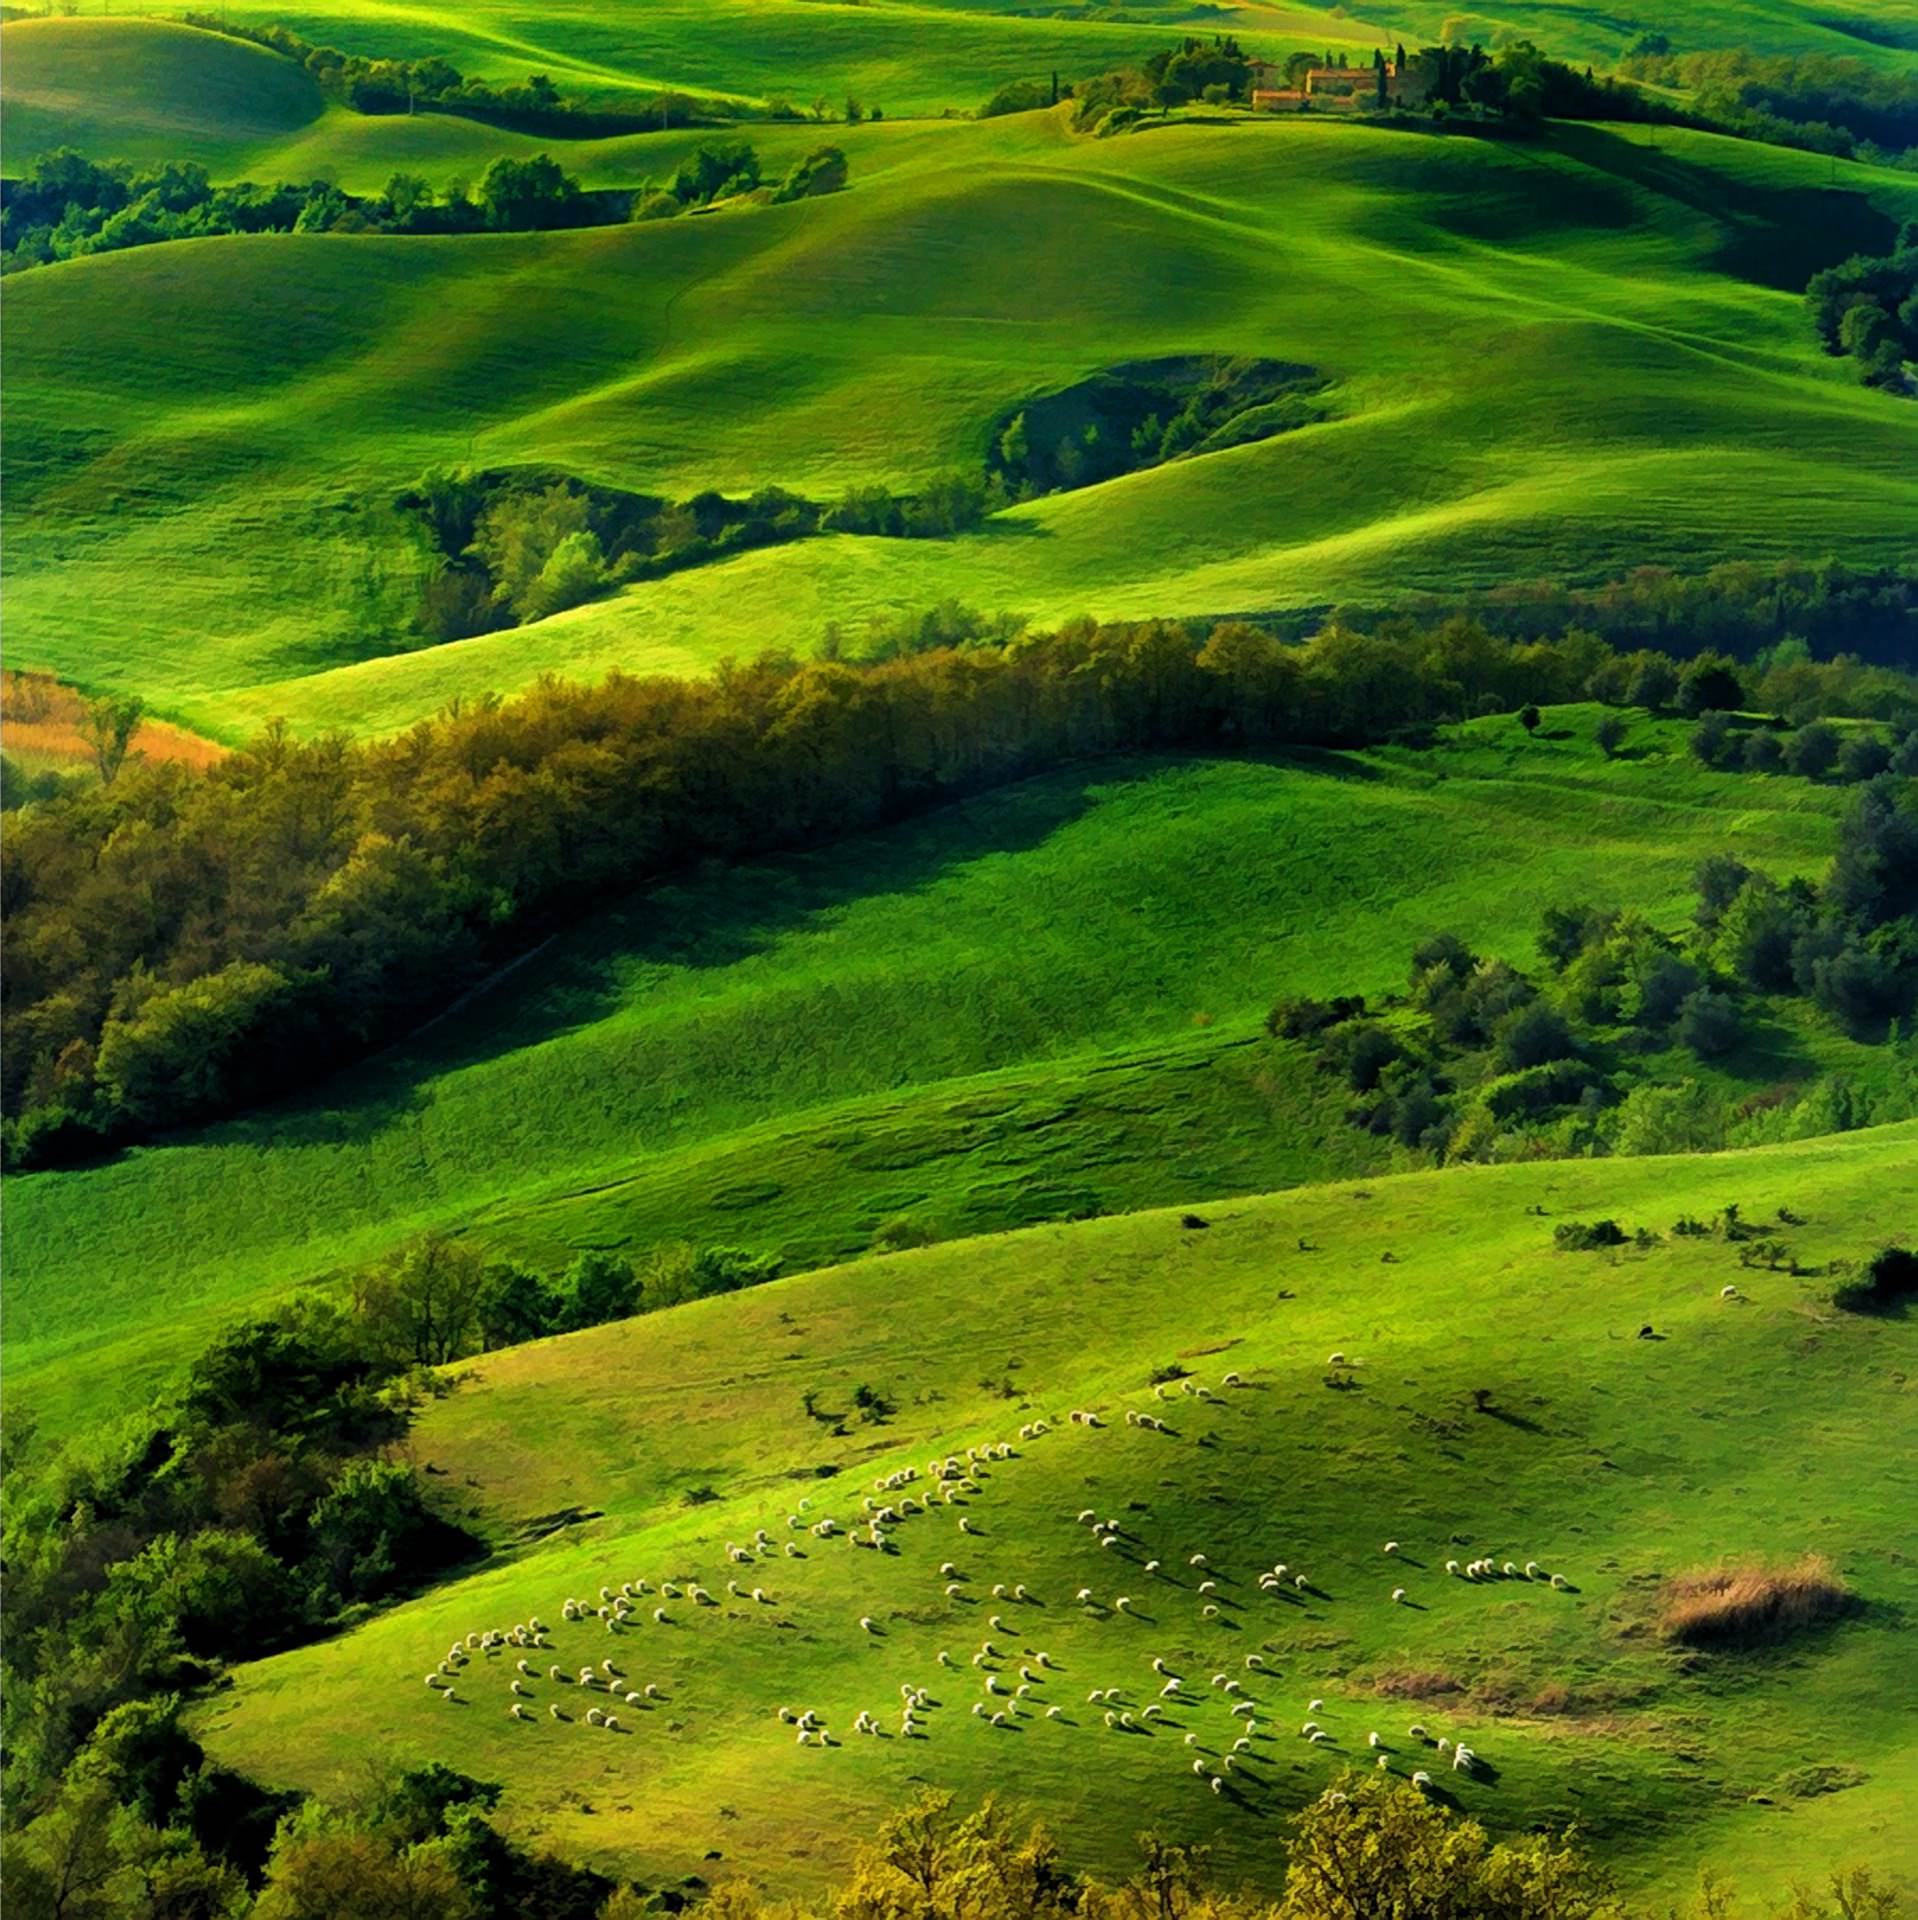 pemandangan hijau padang rumput | wallpaper.sc Android